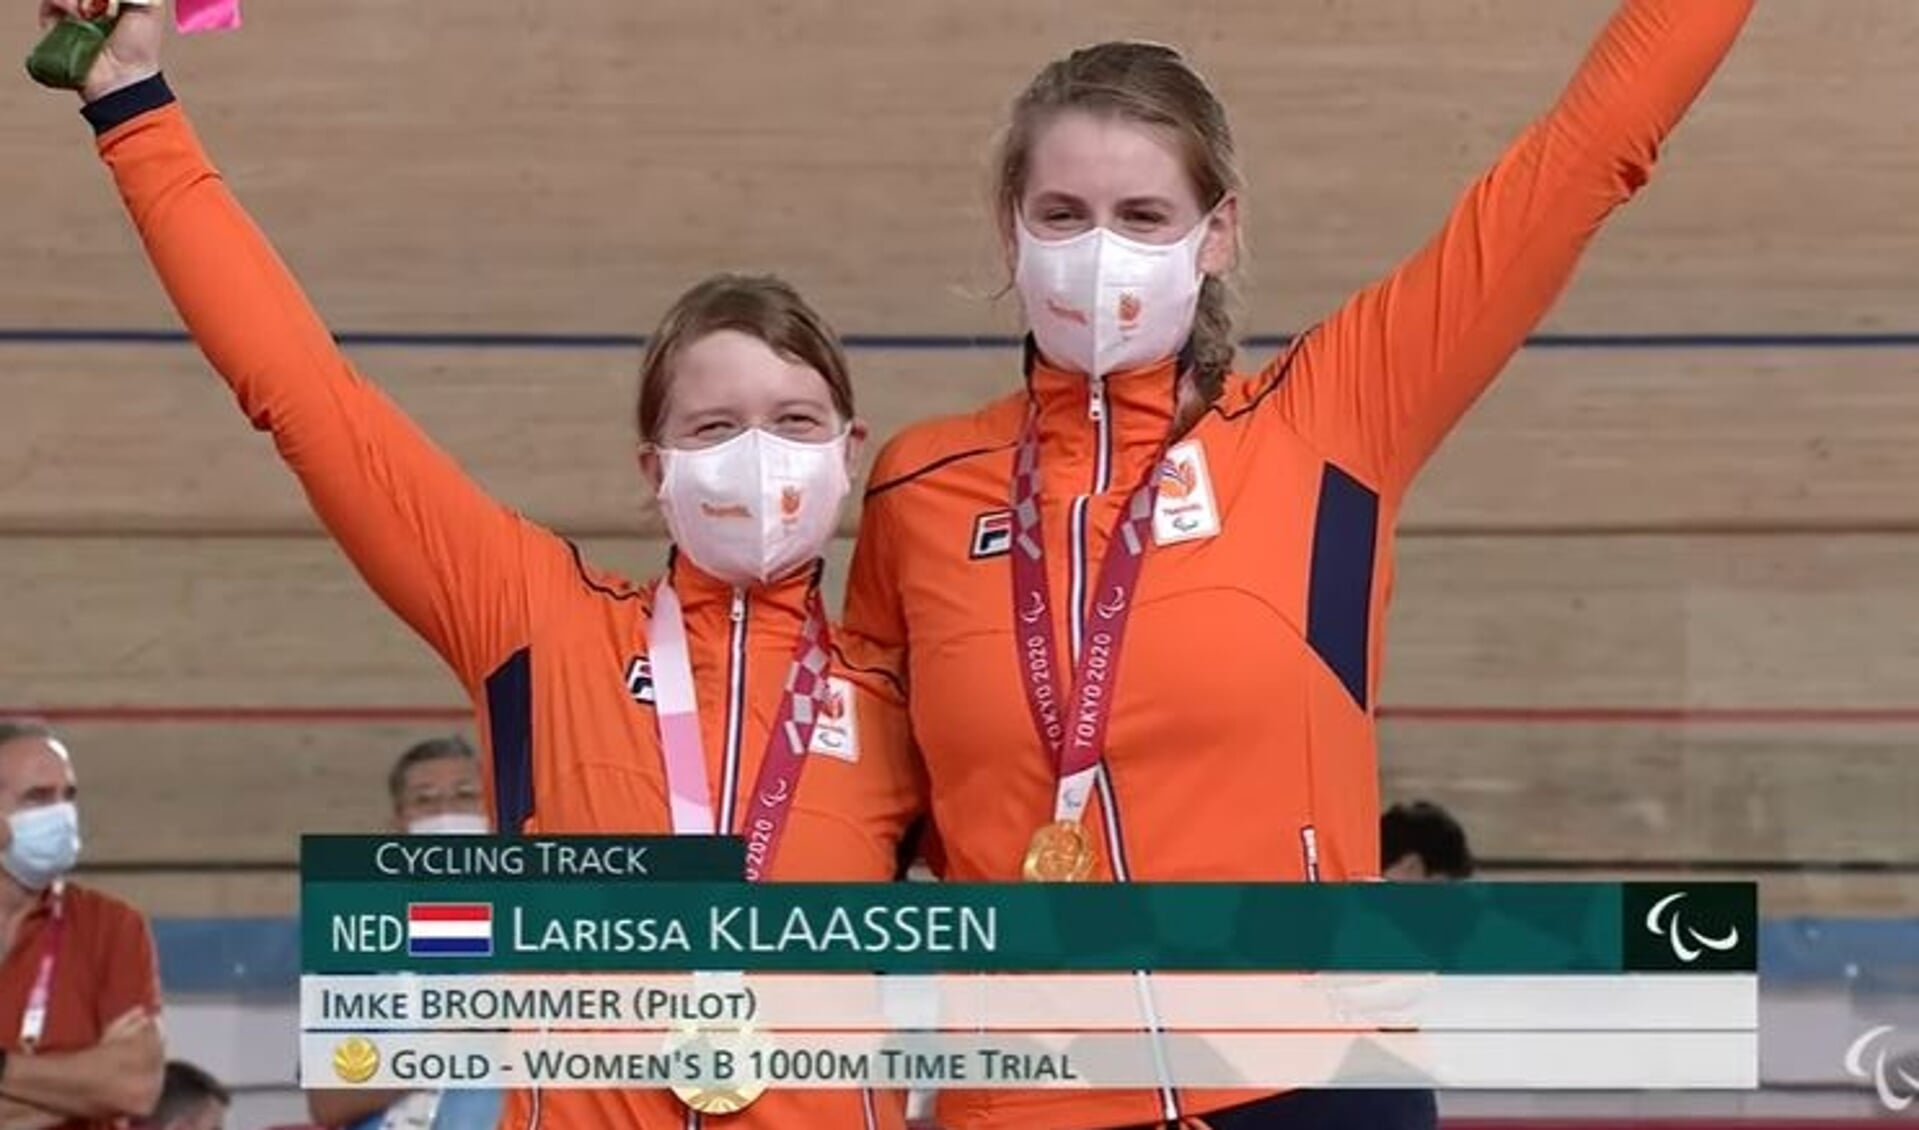 Vreugde bij Larissa en Imke nadat zij de Paralympische medailles hadden ontvangen.